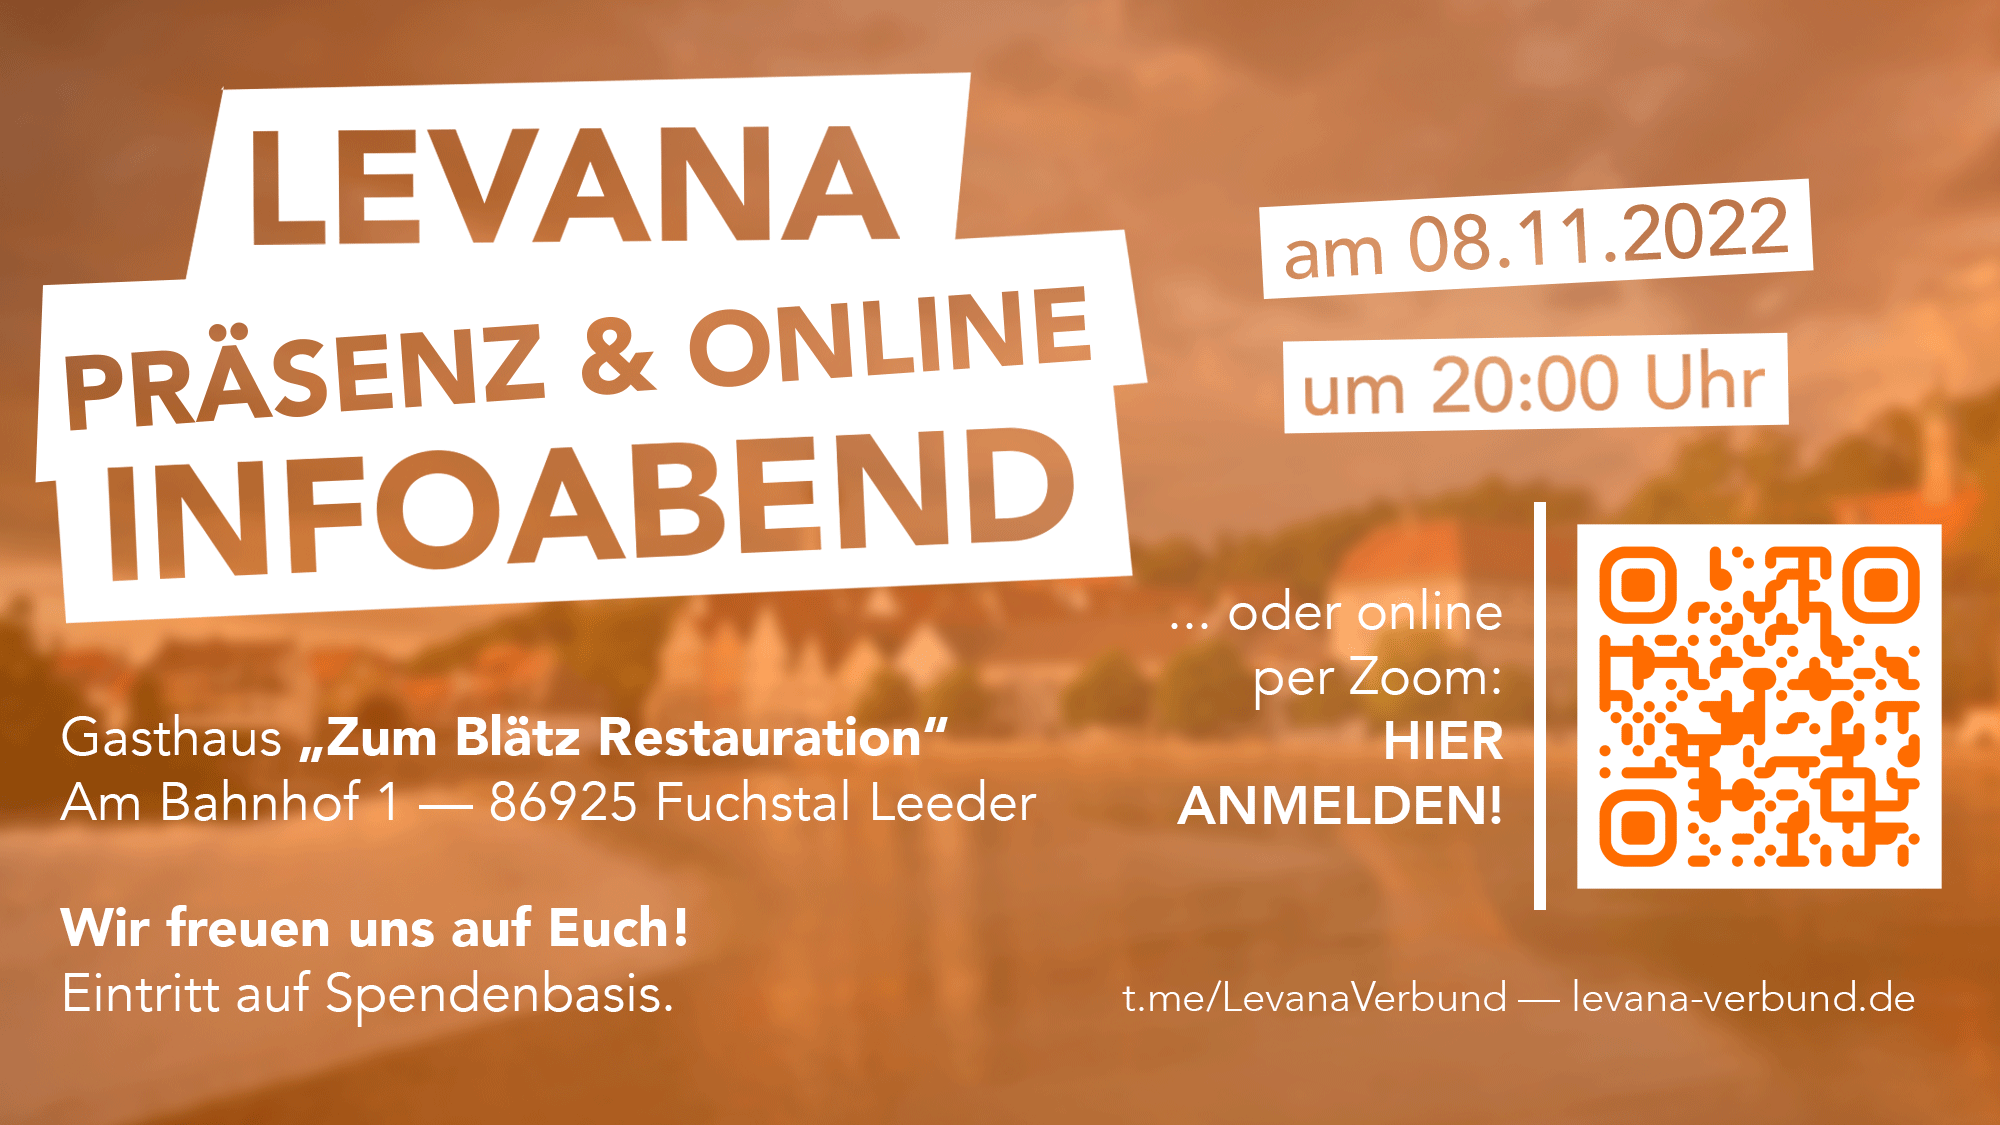 Levana Präsenz- und Online-Infoabend am 8. November 2022